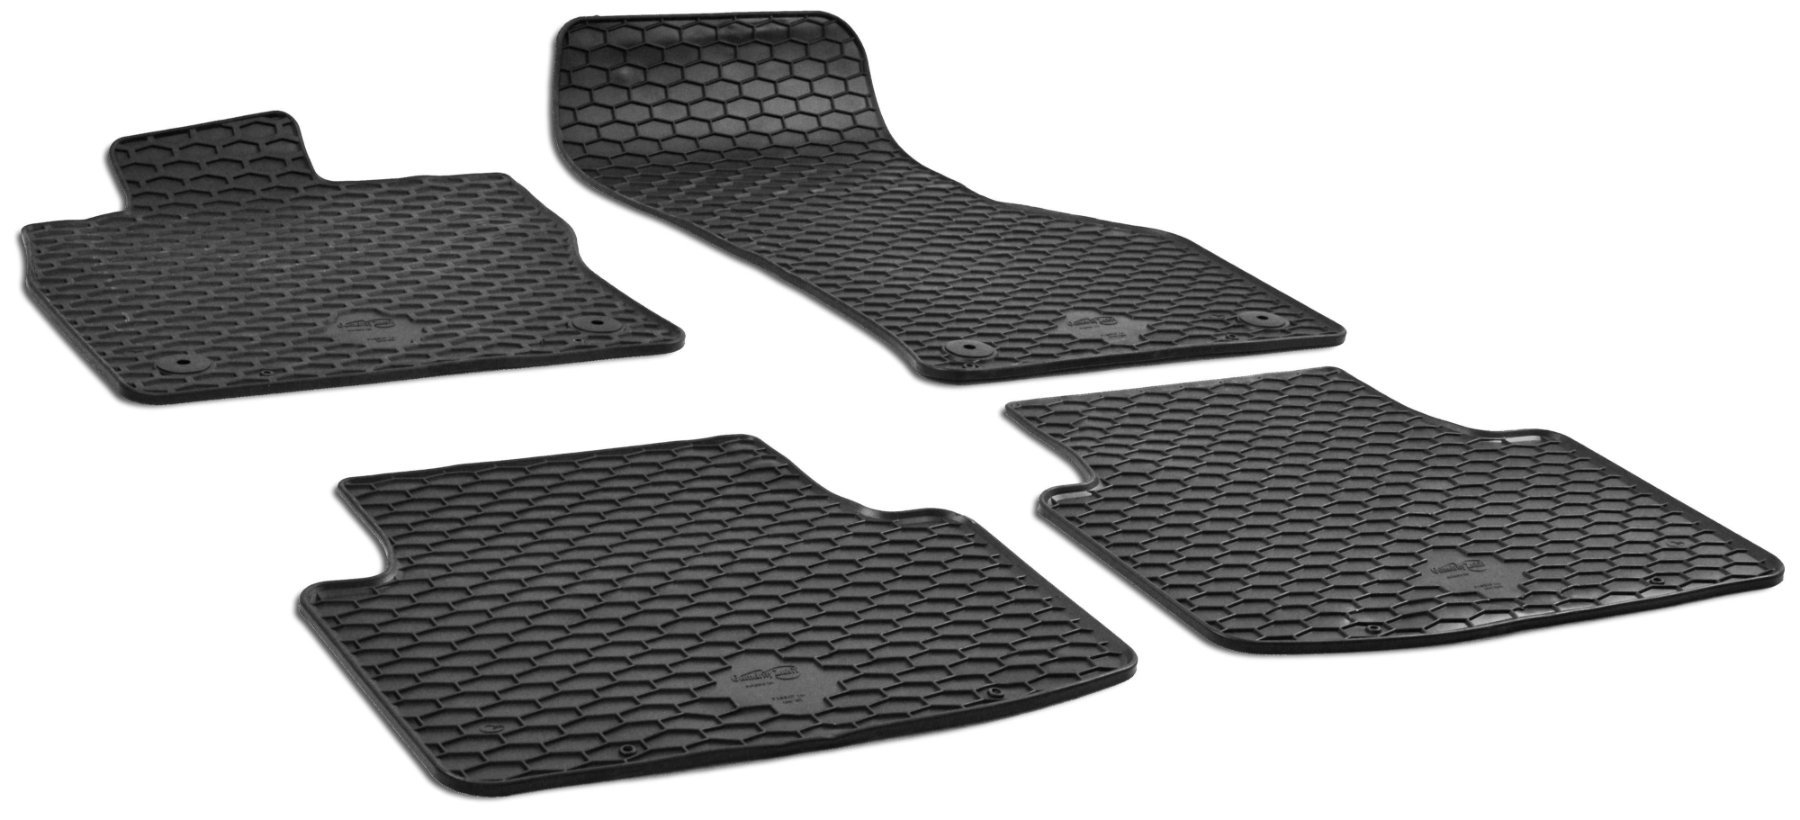 Rubber mats DirtGuard for VW Passat 05/2015-Today